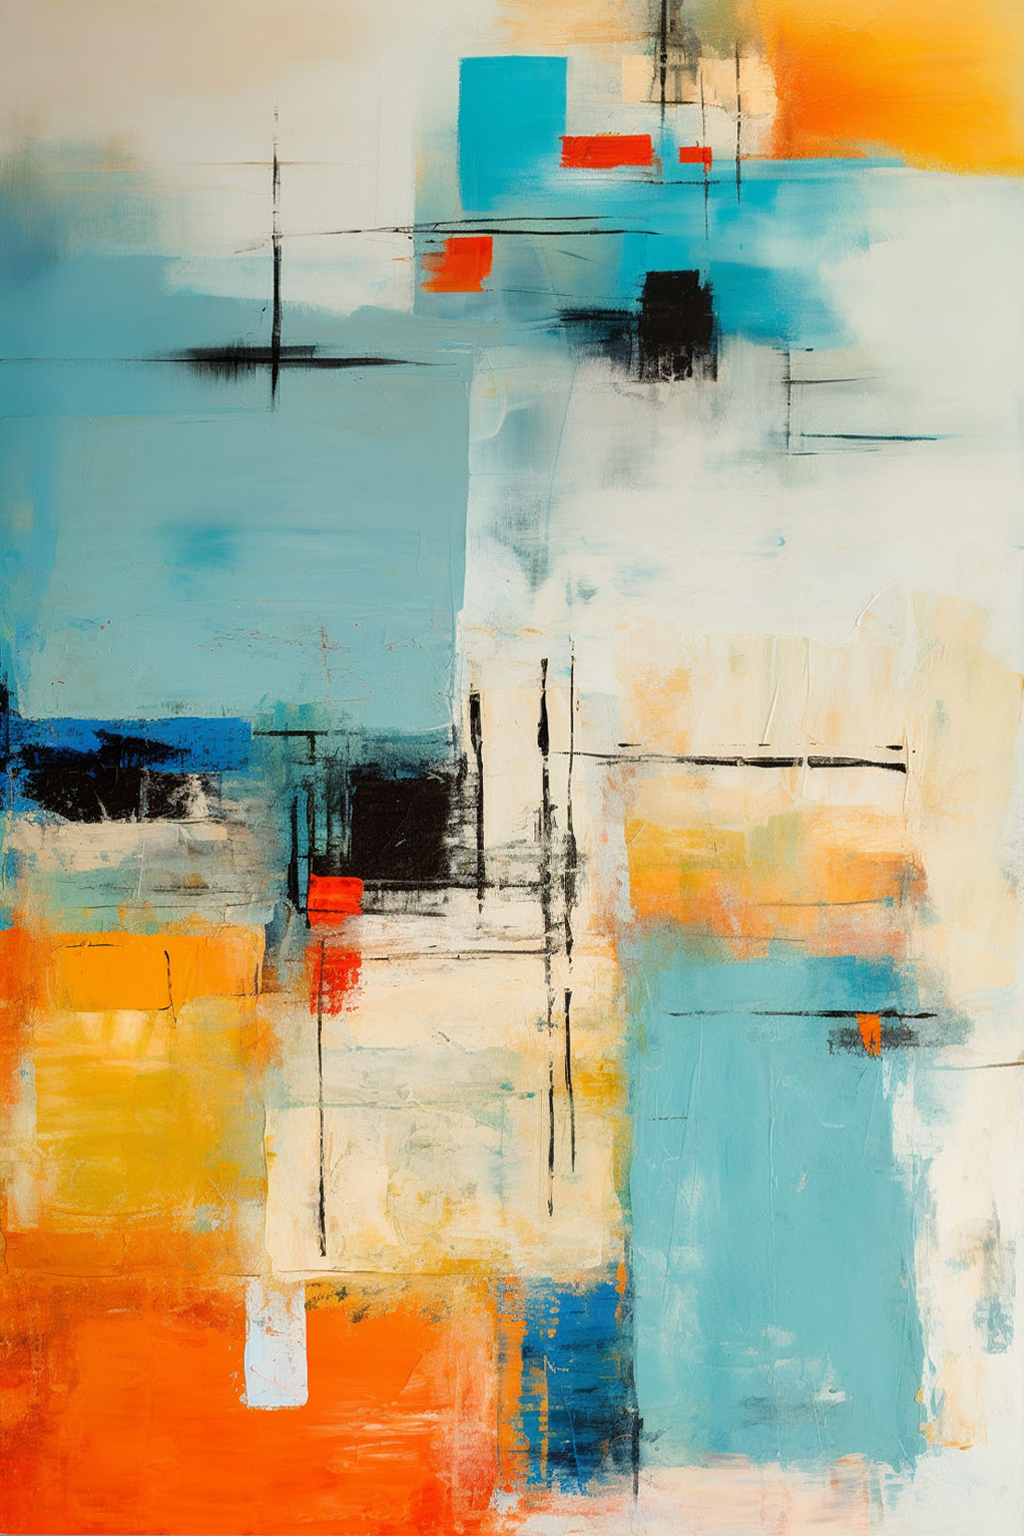 Arte abstracto con una combinación de colores vibrantes y formas geométricas en tonos de azul, naranja, rojo y negro.